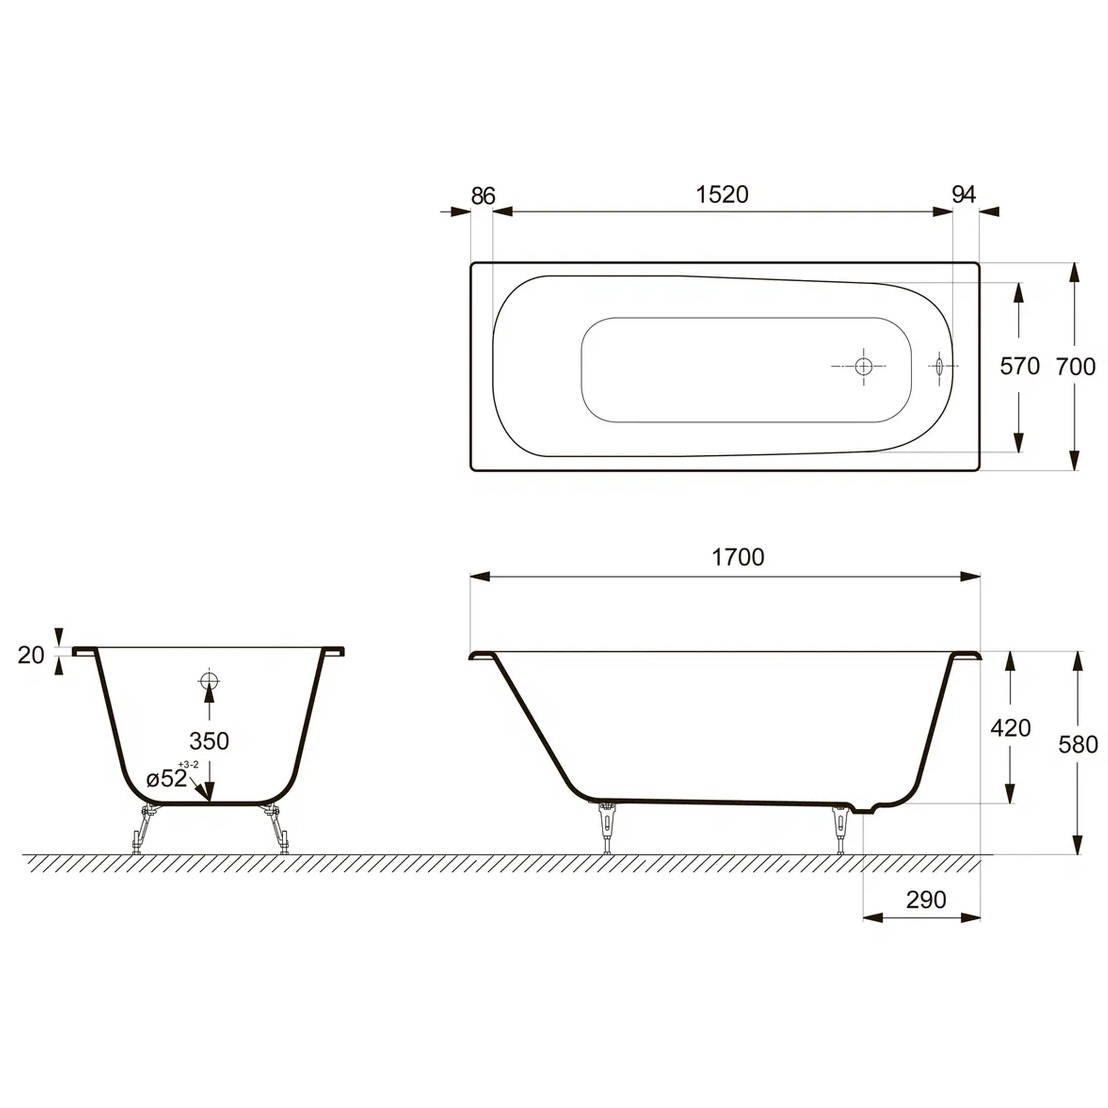 Ванна чугунная Delice Continental DLR230613R-AS 170х70 (белый), встраиваемая с антискользящим покрытием и отверстиями под ручки